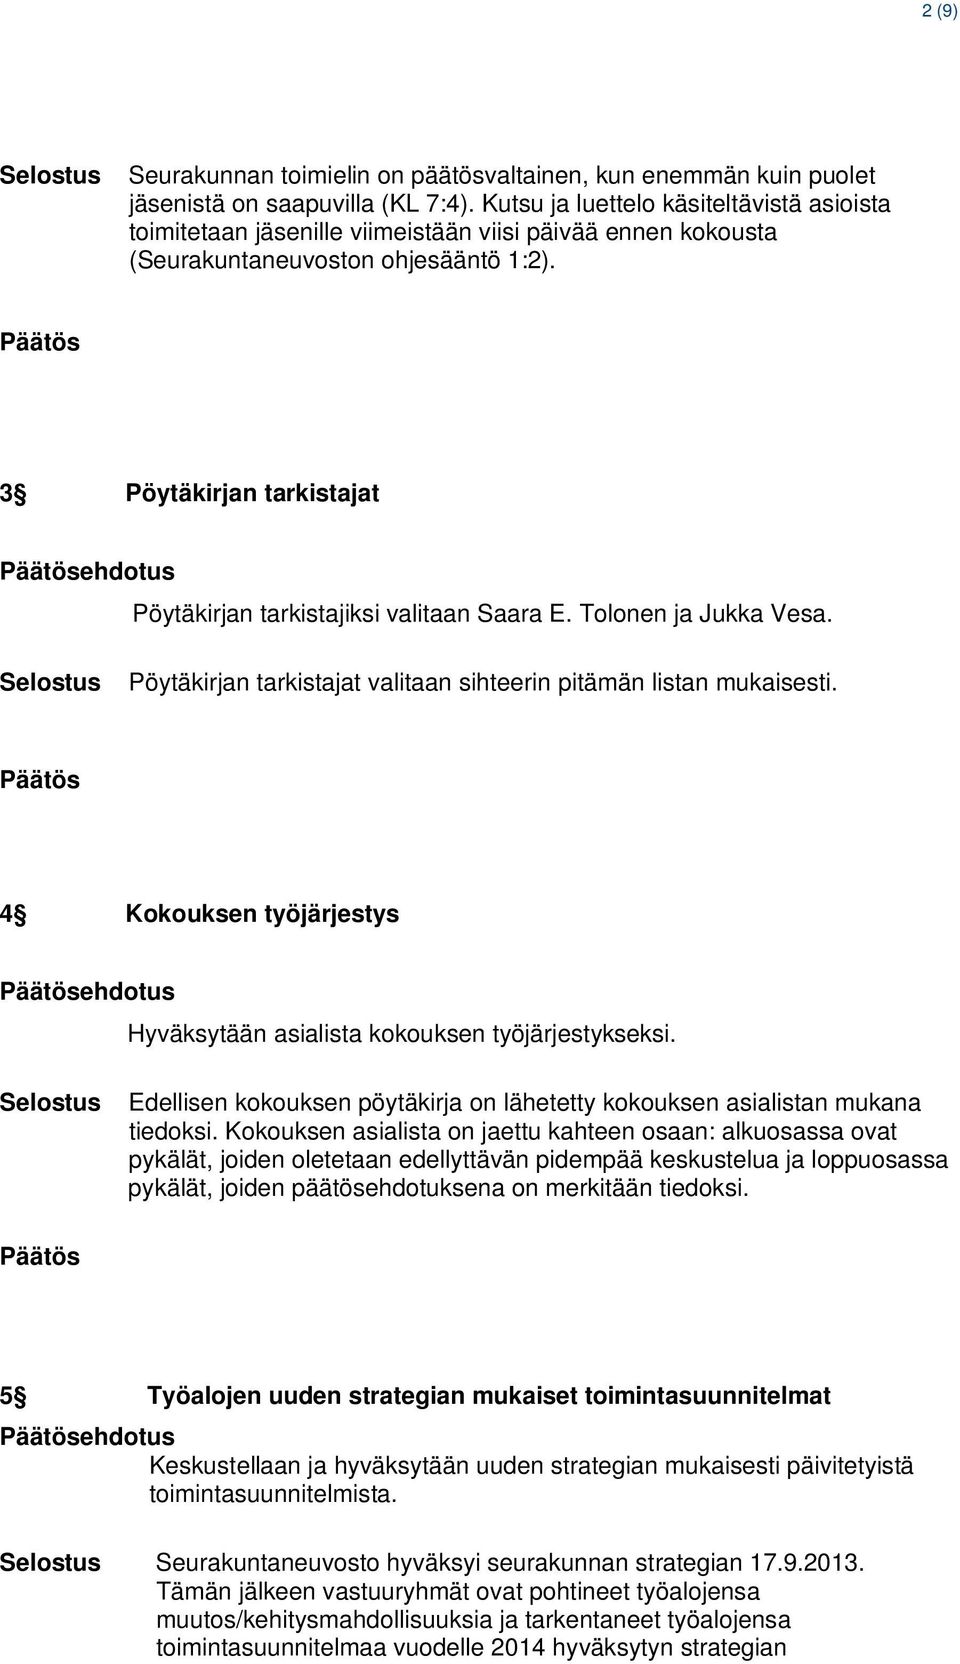 3 Pöytäkirjan tarkistajat ehdotus Pöytäkirjan tarkistajiksi valitaan Saara E. Tolonen ja Jukka Vesa. Pöytäkirjan tarkistajat valitaan sihteerin pitämän listan mukaisesti.